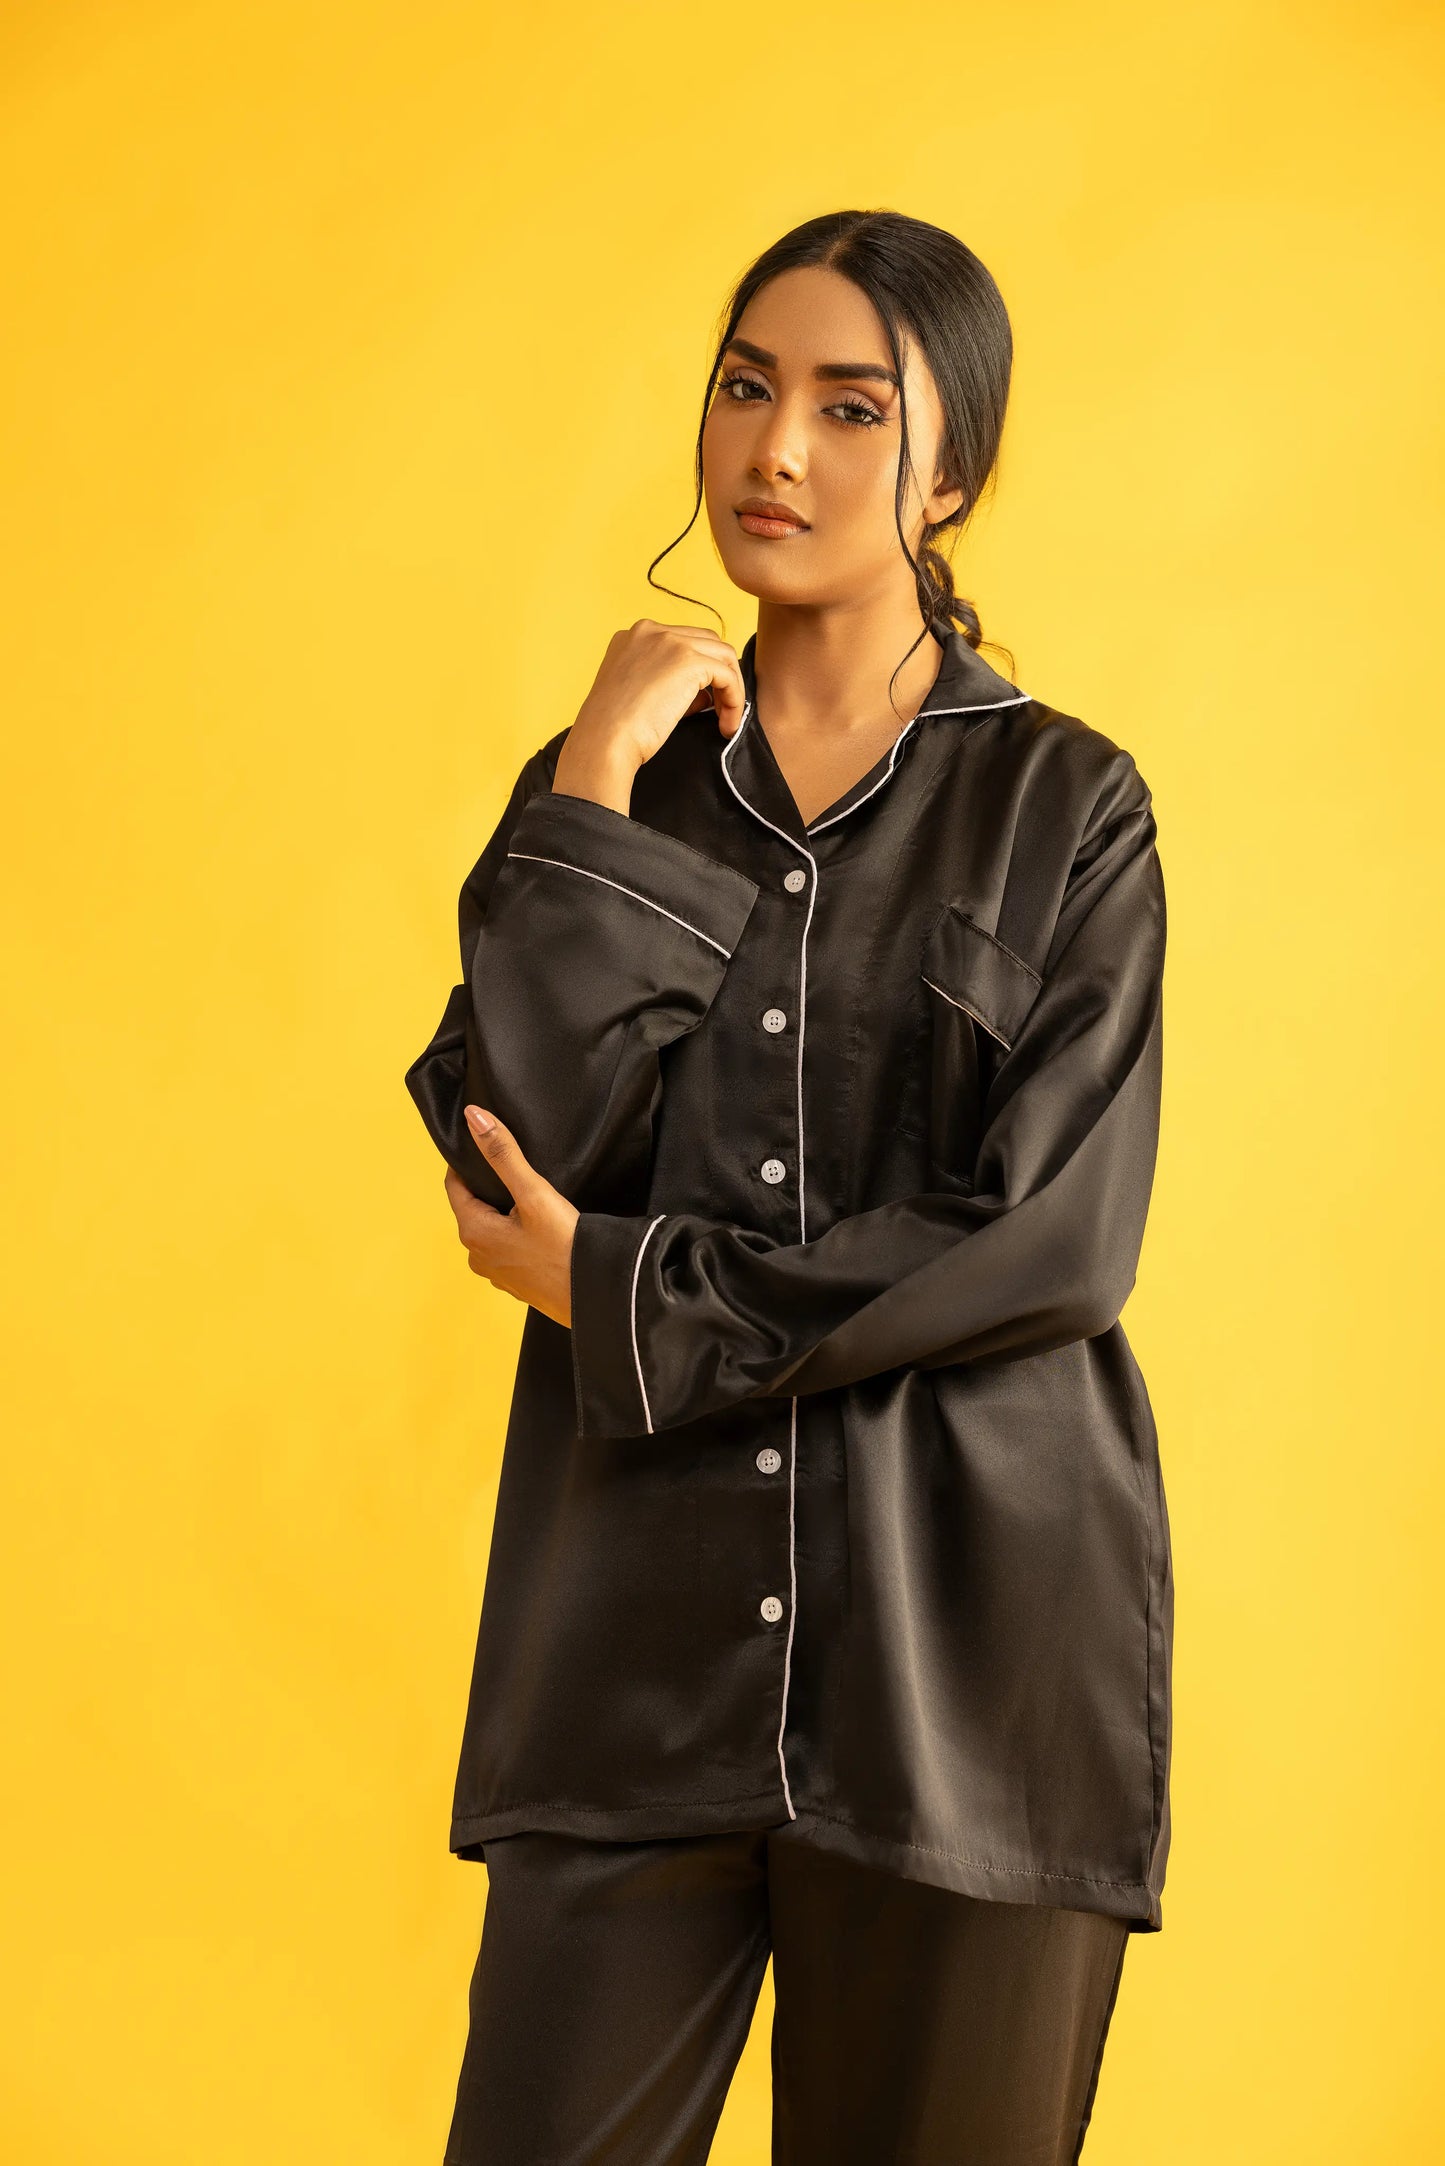 Black Silk Satin Women‘s Pajamas Set Notched Collar Top & Wide Leg Long Pants 2 Pieces  Loungewear